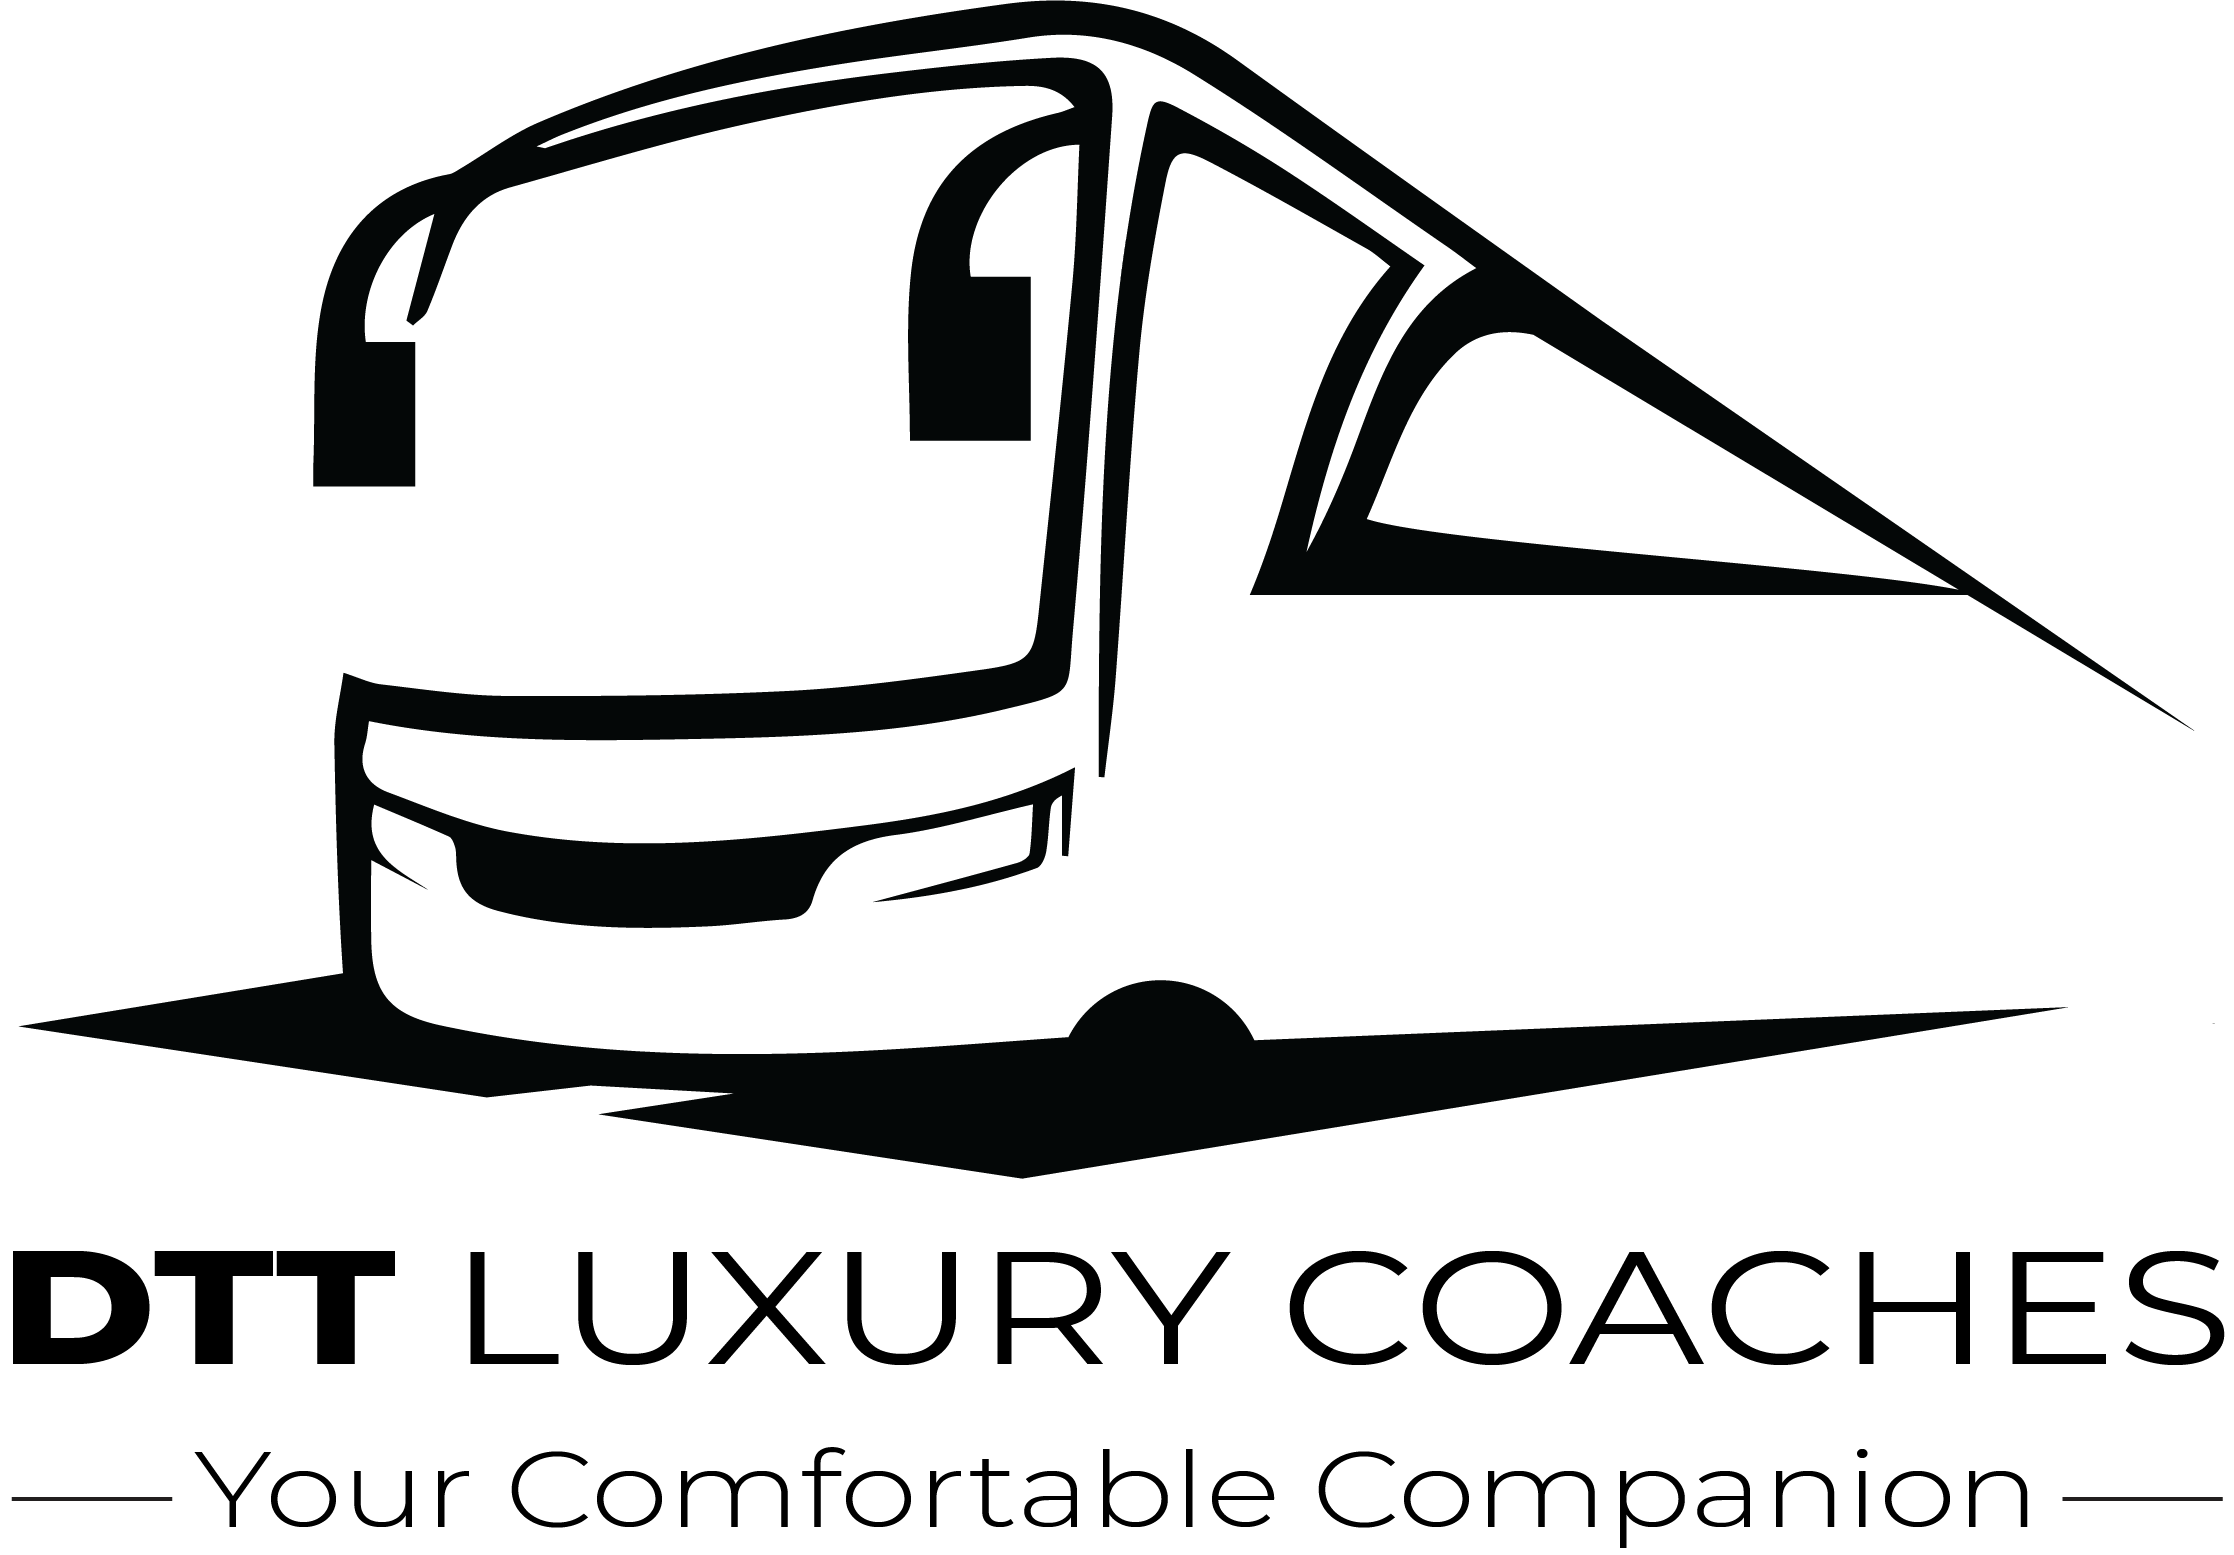 Dtt Luxury Coaches in Dubai